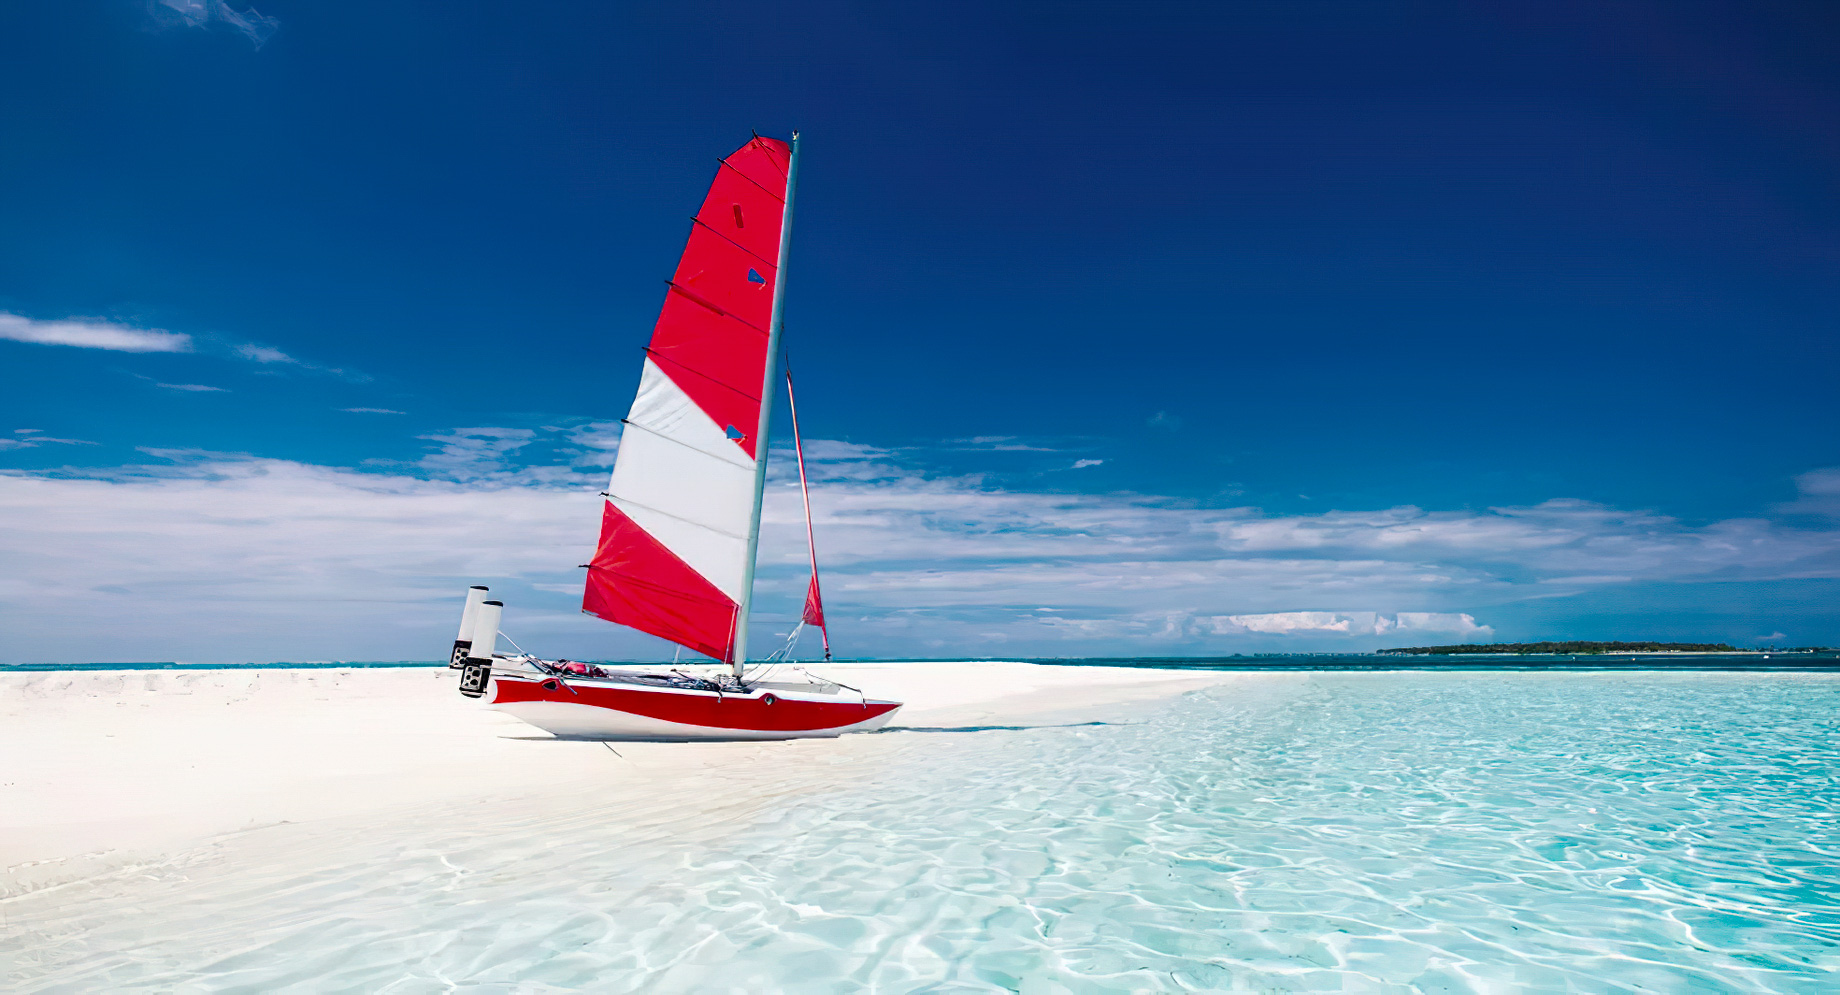 Anantara Thigu Maldives Resort – South Male Atoll, Maldives – Watersports Sailing